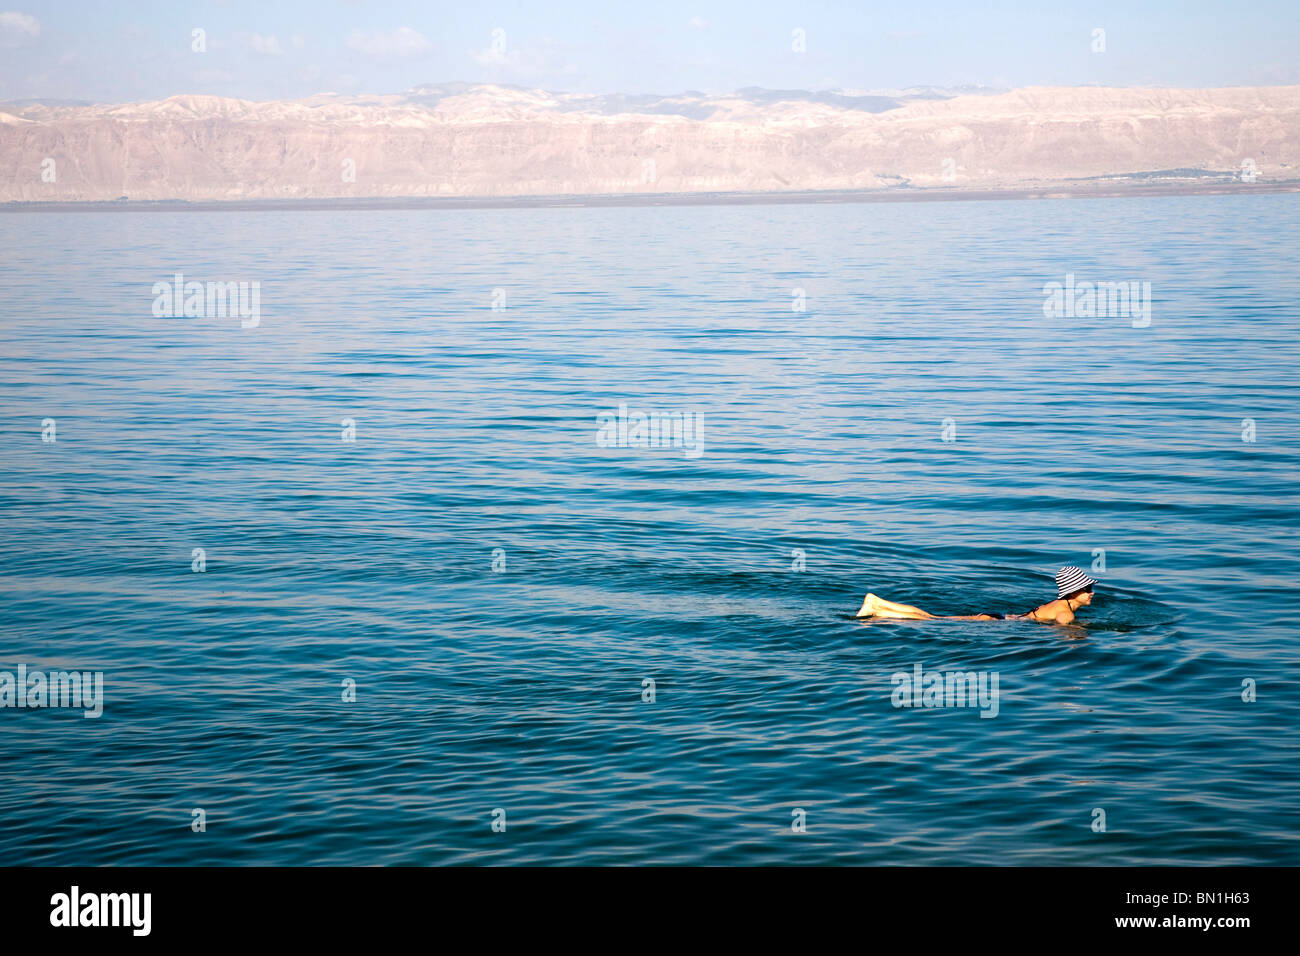 Oriente Medio, Jordania, el Mar Muerto, 400 metros bajo el nivel del mar Foto de stock